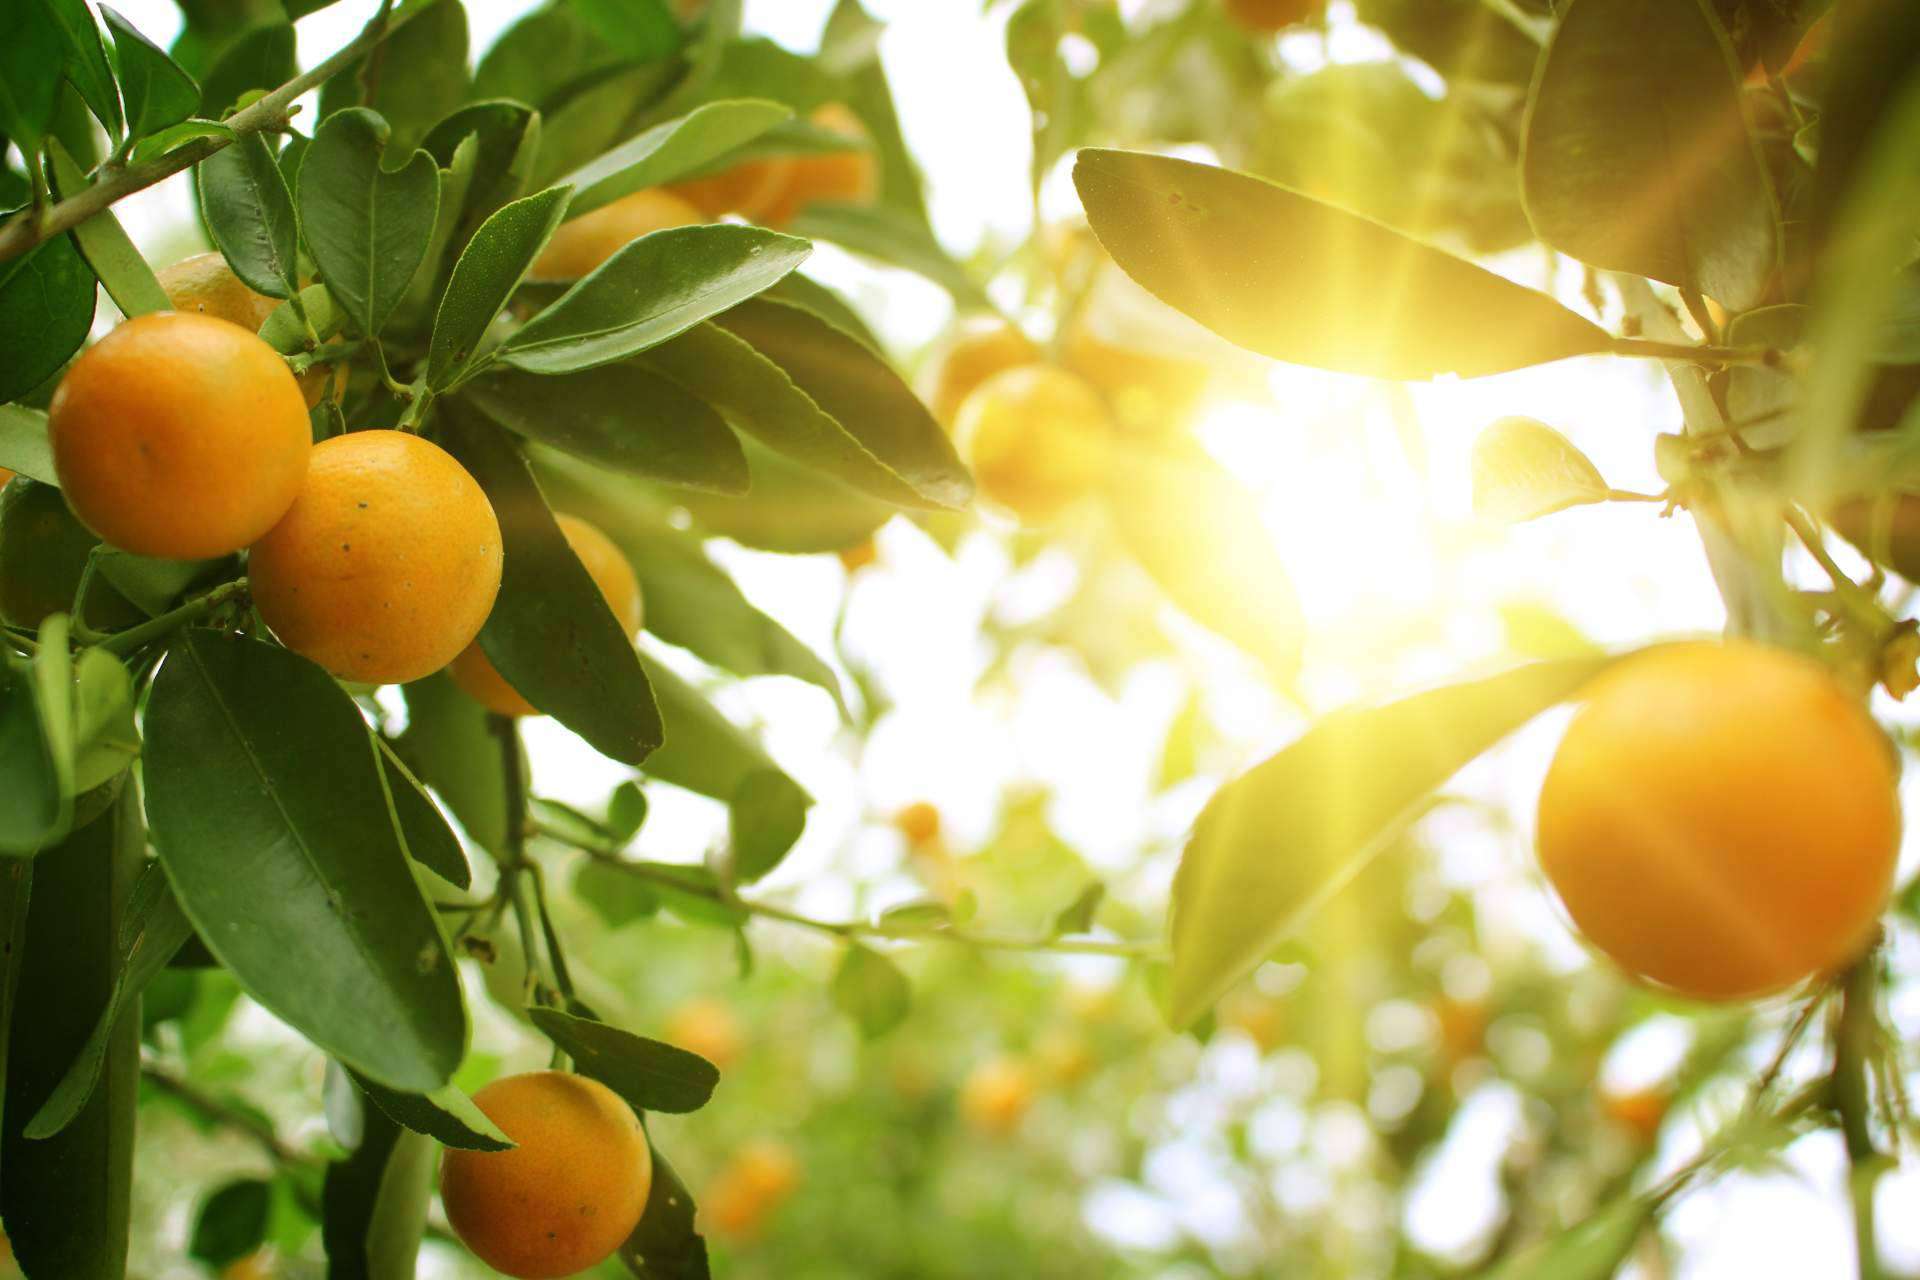 Sabor a Naranjas dispone de naranjas totalmente naturales en su página web